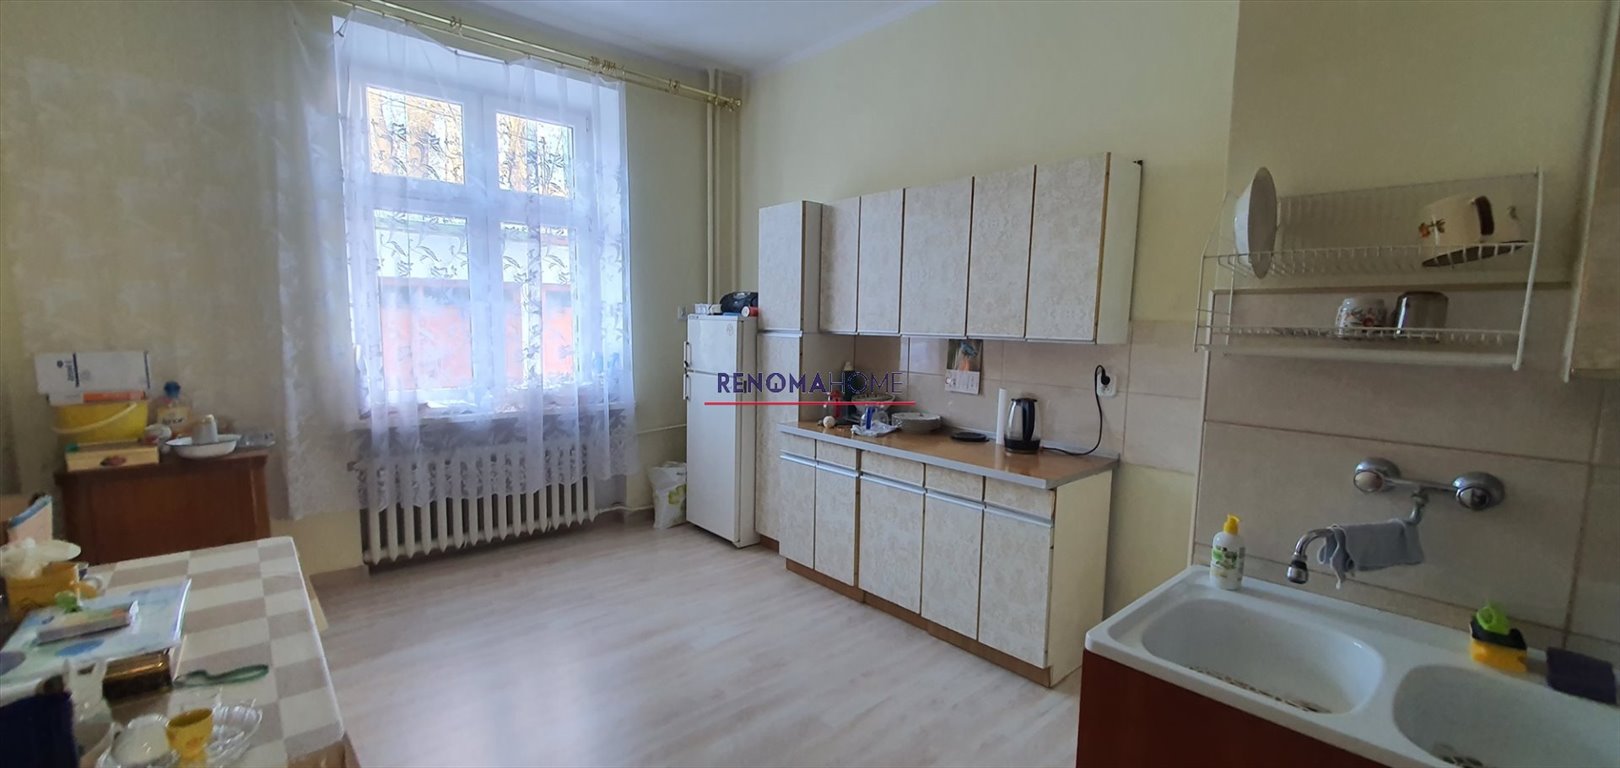 Mieszkanie dwupokojowe na sprzedaż Wałbrzych, Piaskowa Góra  74m2 Foto 3